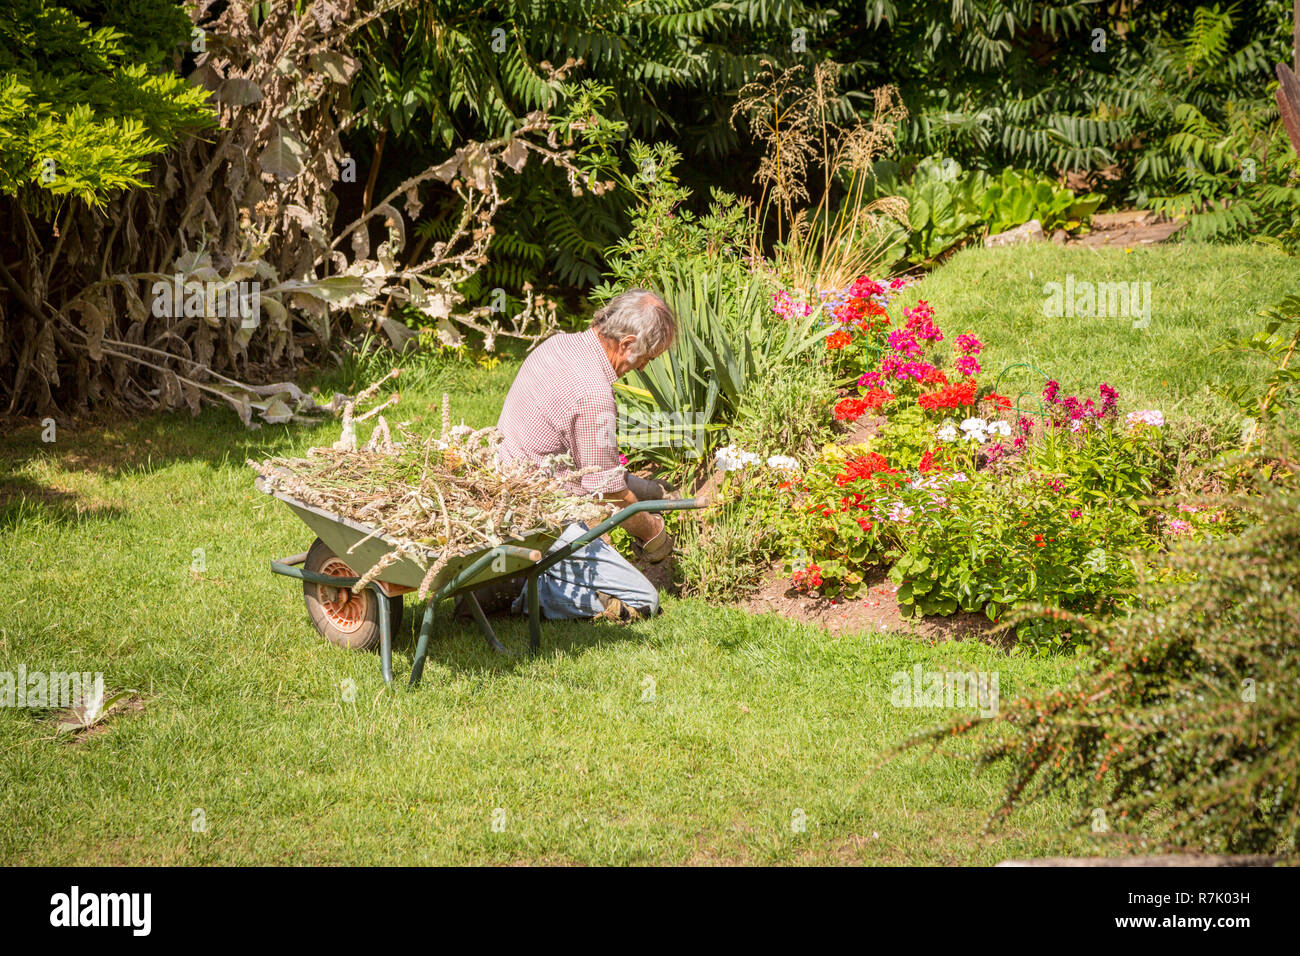 Gardener tending to plants in a summer garden, UK Stock Photo